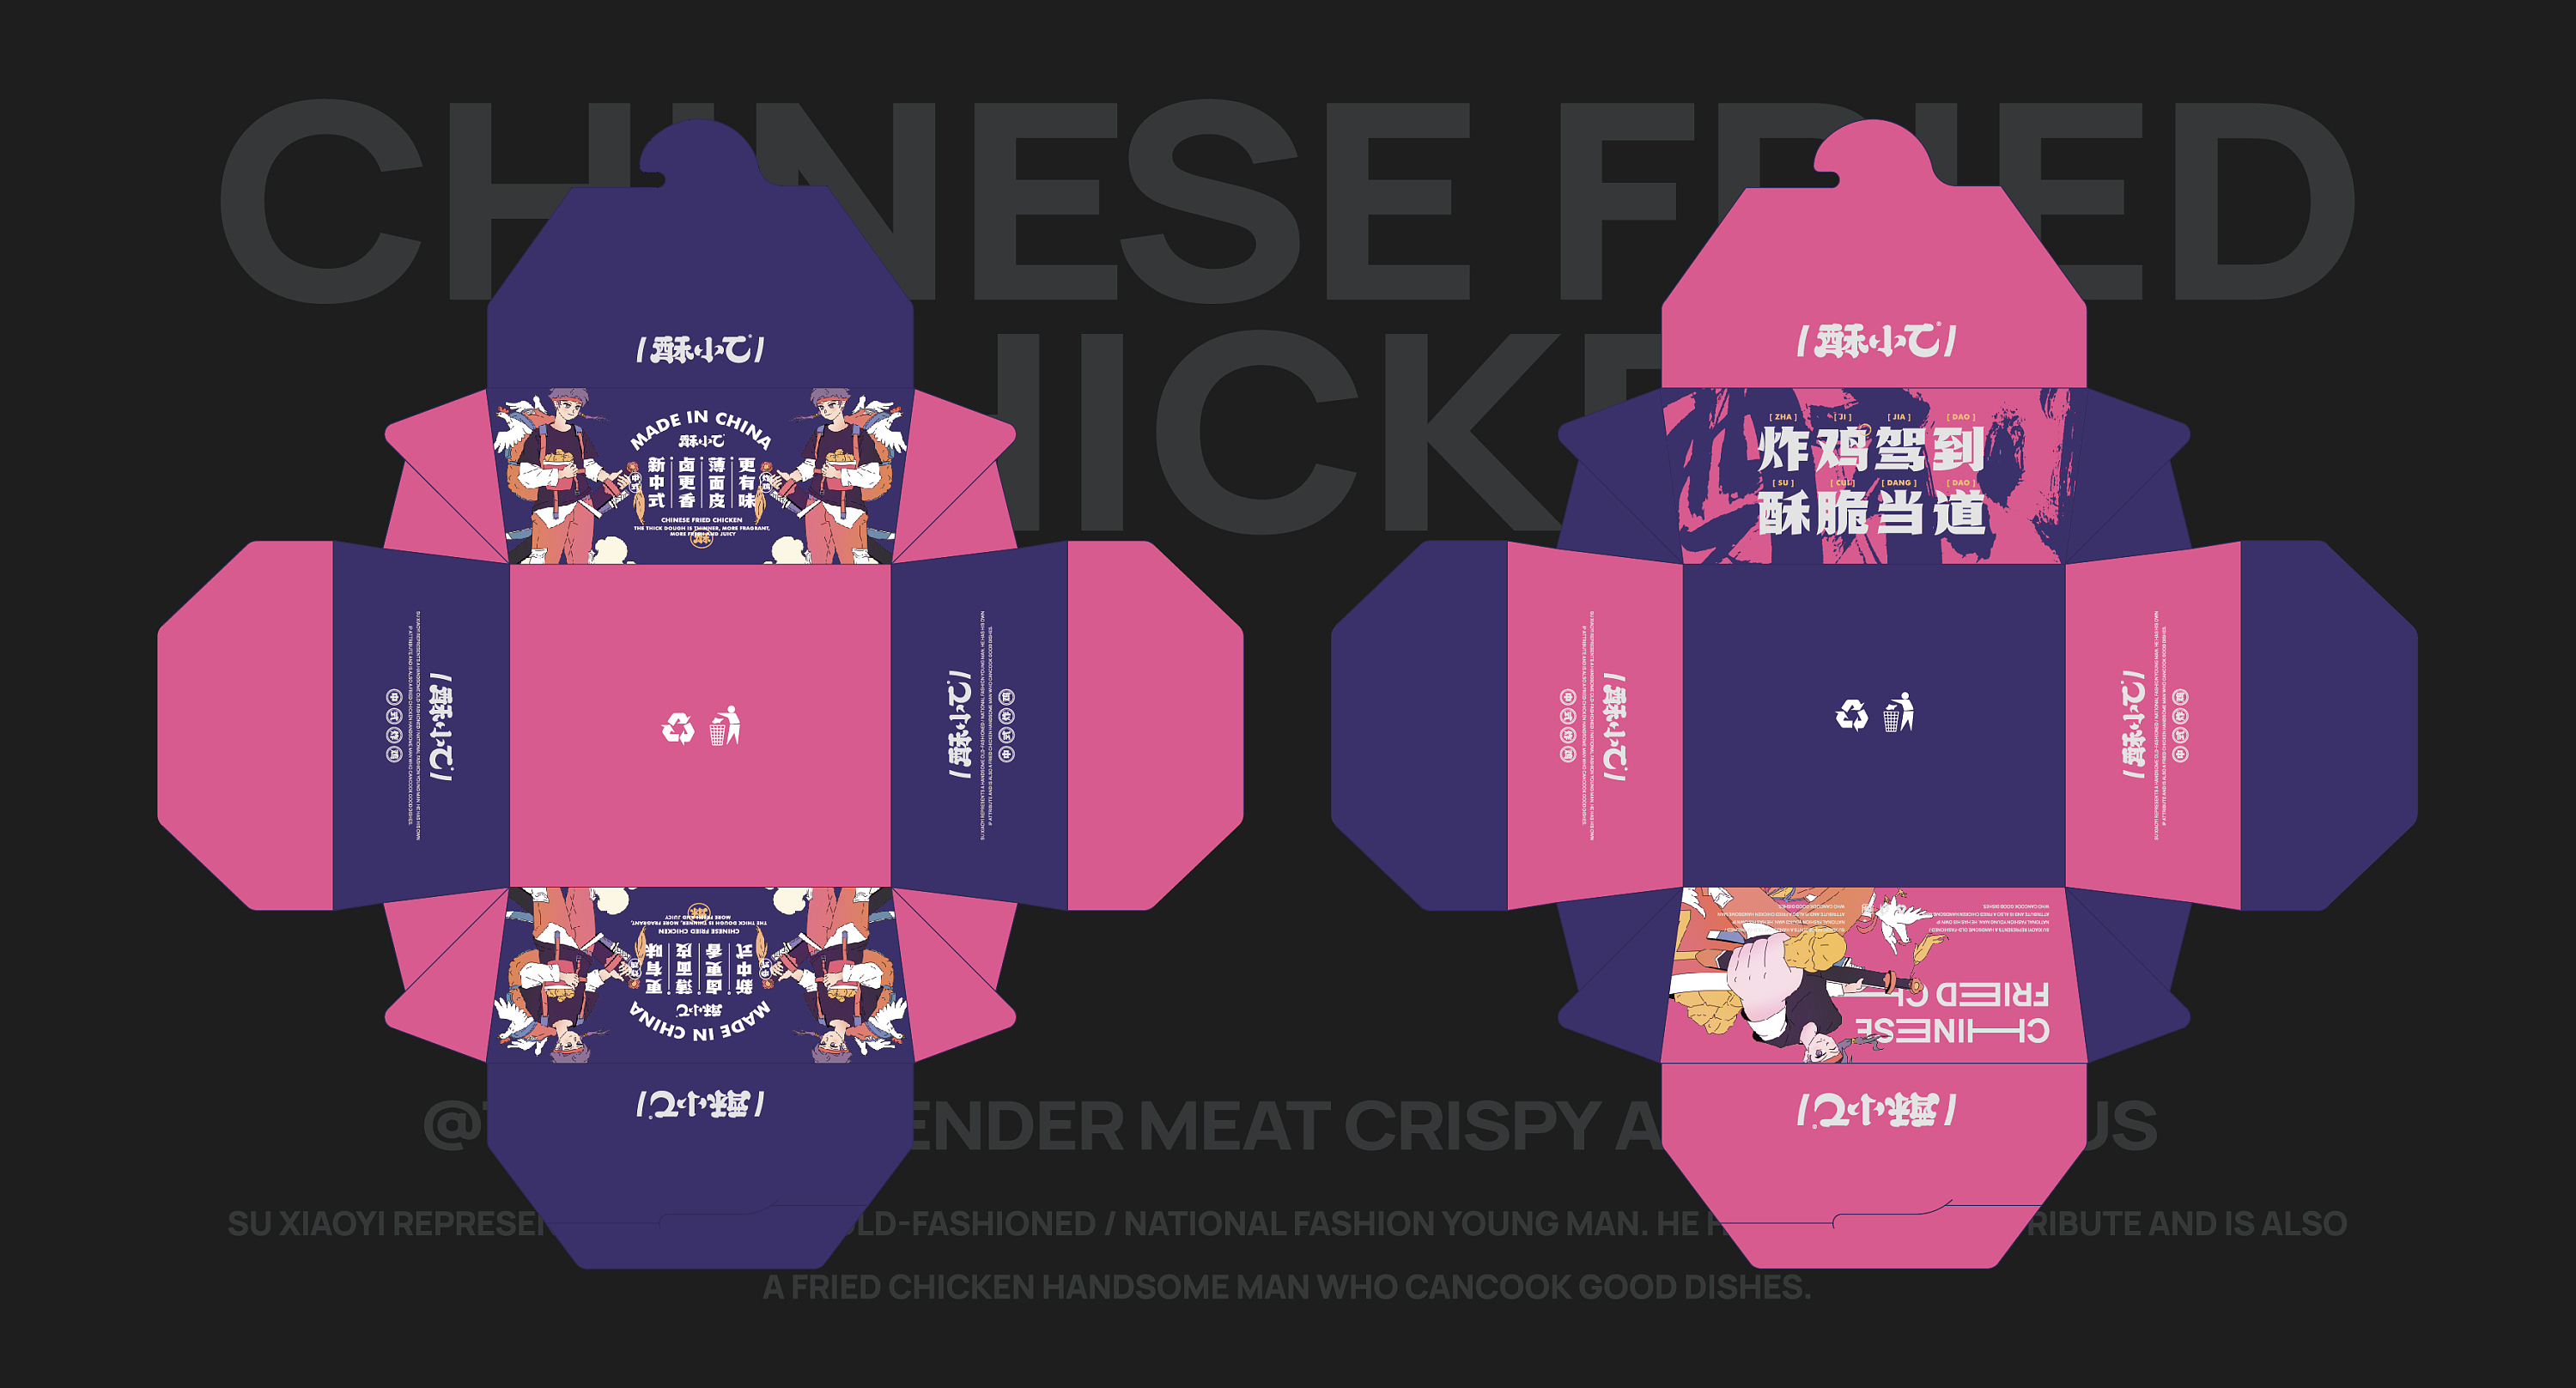 炸鸡品牌席卷而来！更懂中国人的新中式炸鸡vi设计